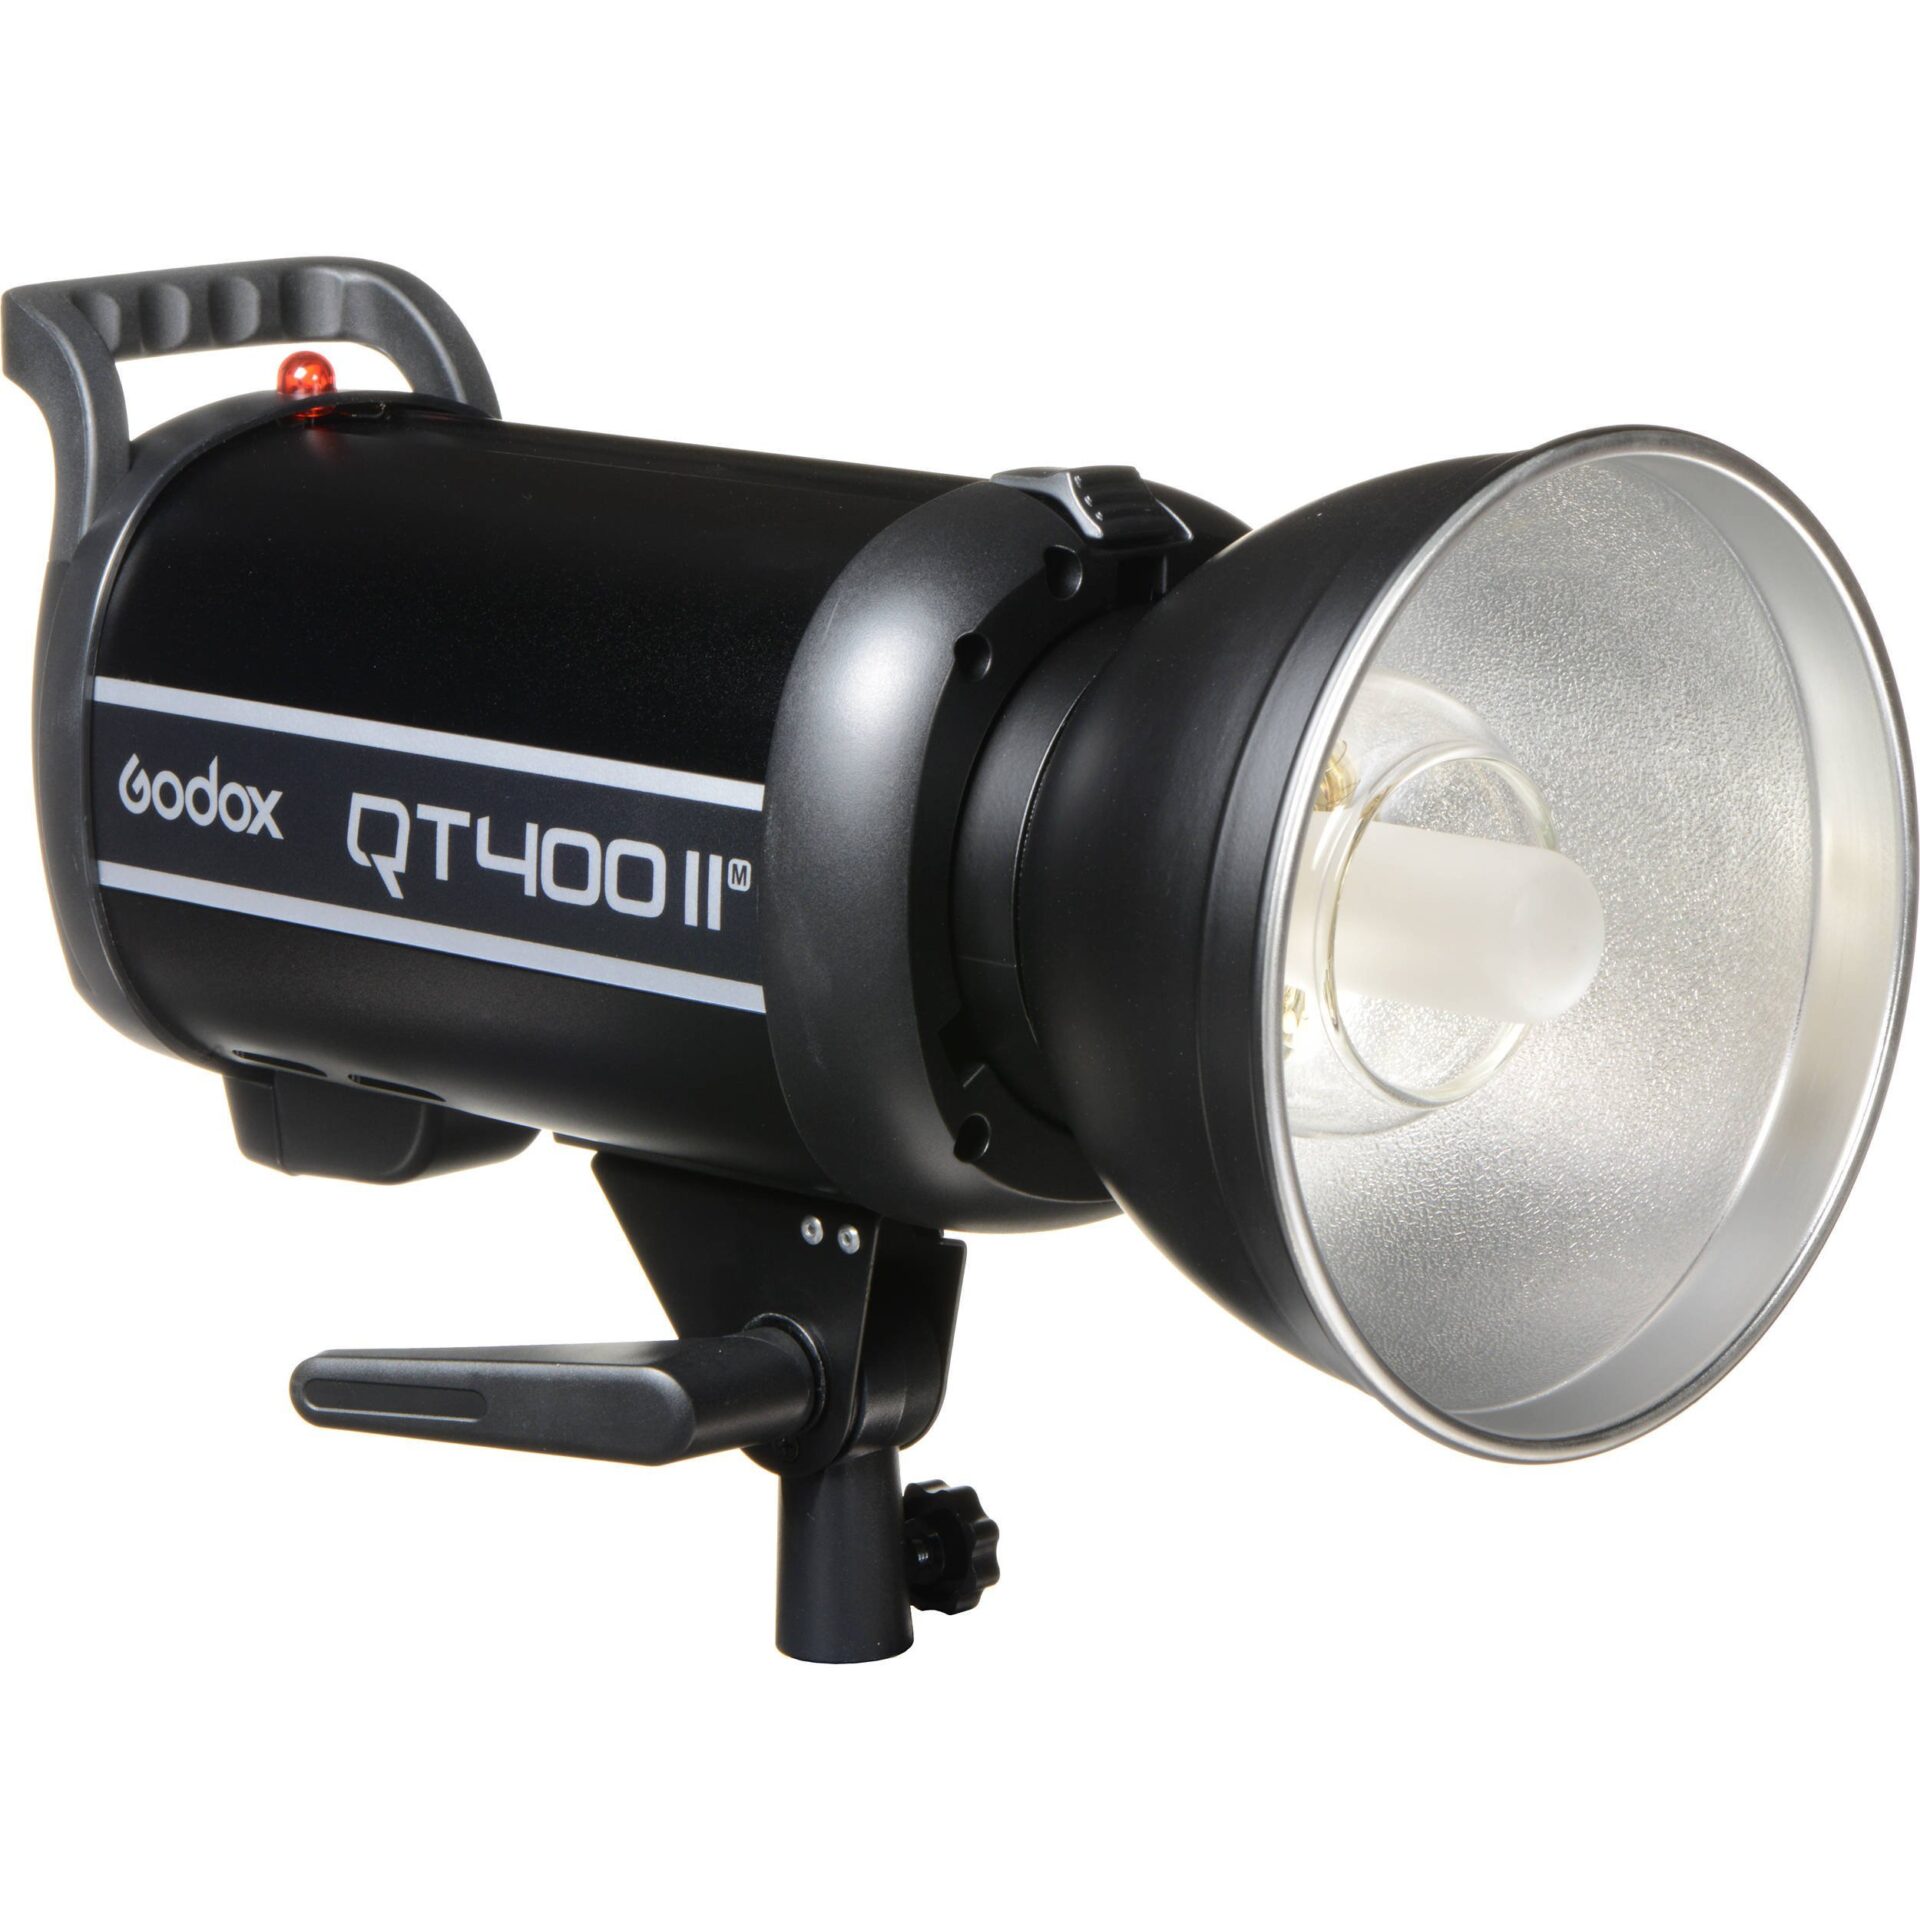 đèn Godox QT400 II